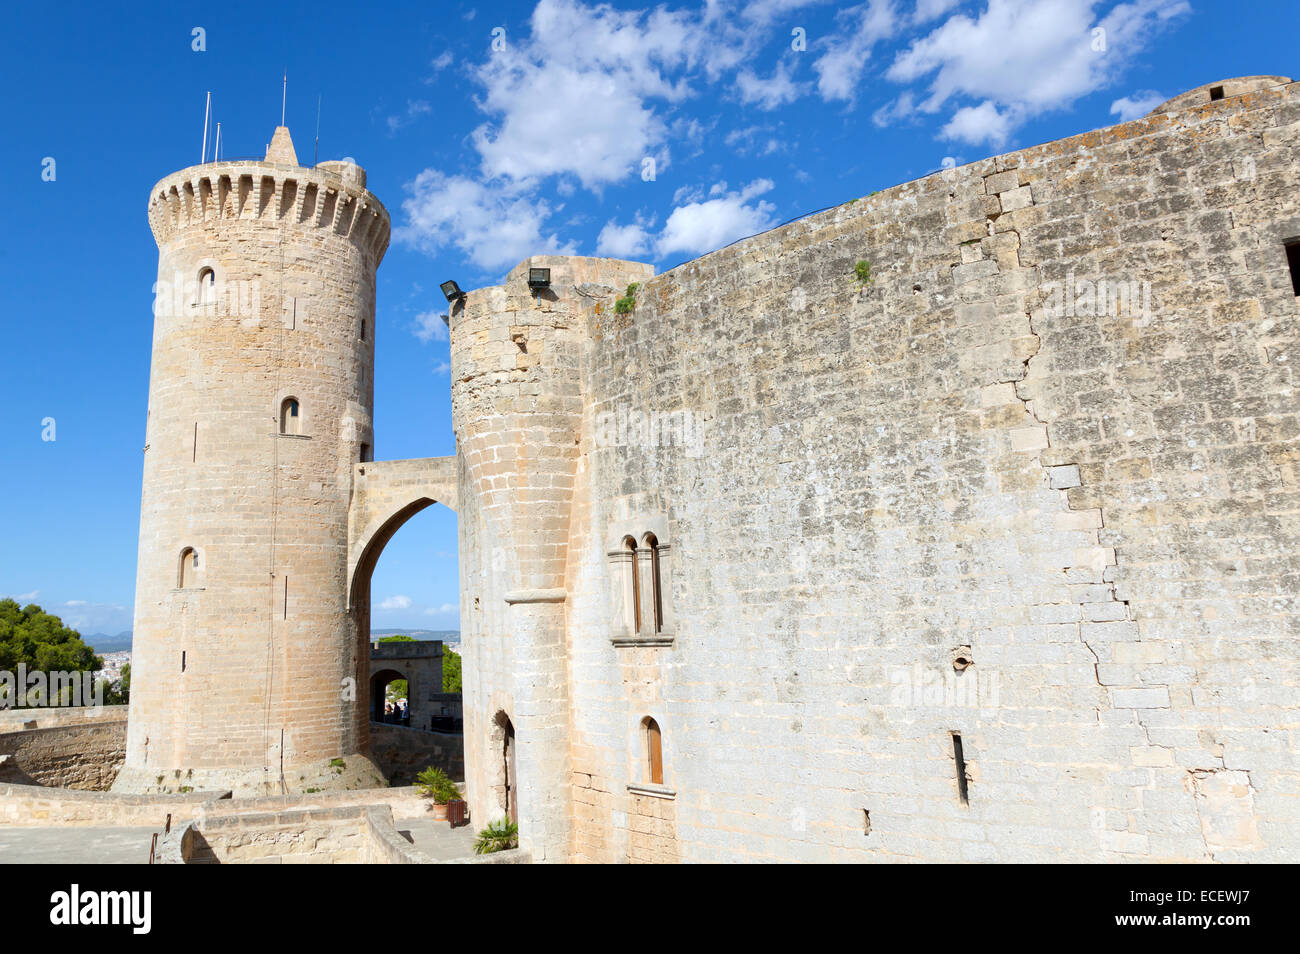 Medieval castle Bellver in Palma de Mallorca, Spain Stock Photo